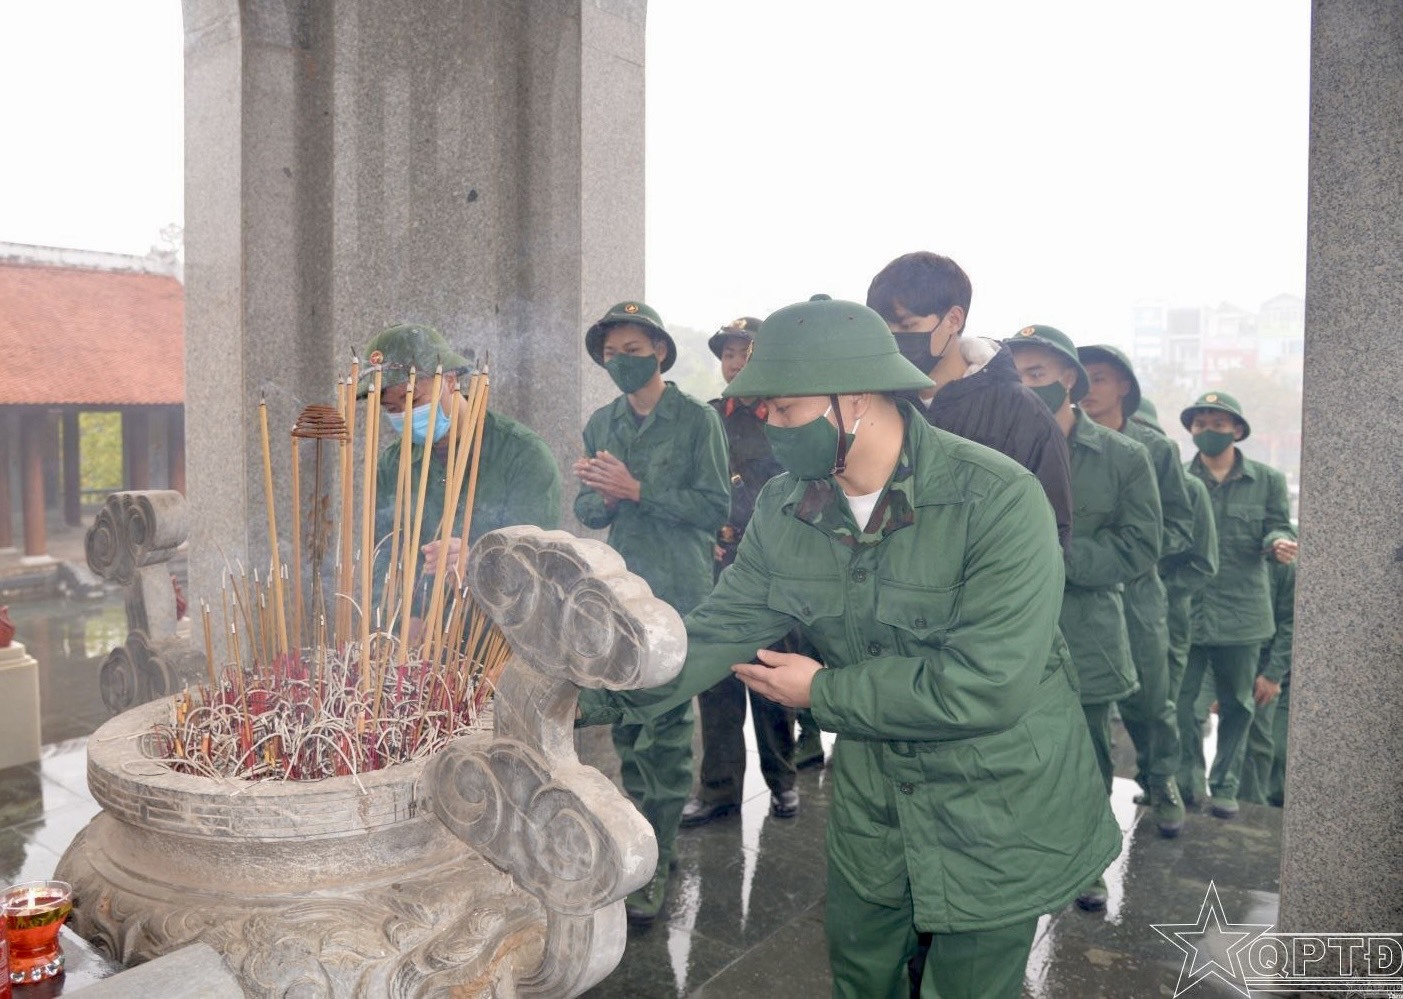 Thanh niên chuẩn bị nhập ngũ dâng hương tại Đài tưởng niệm Anh hùng liệt sĩ huyện Đan Phượng. Ảnh: Sở TTTT Hà Nội